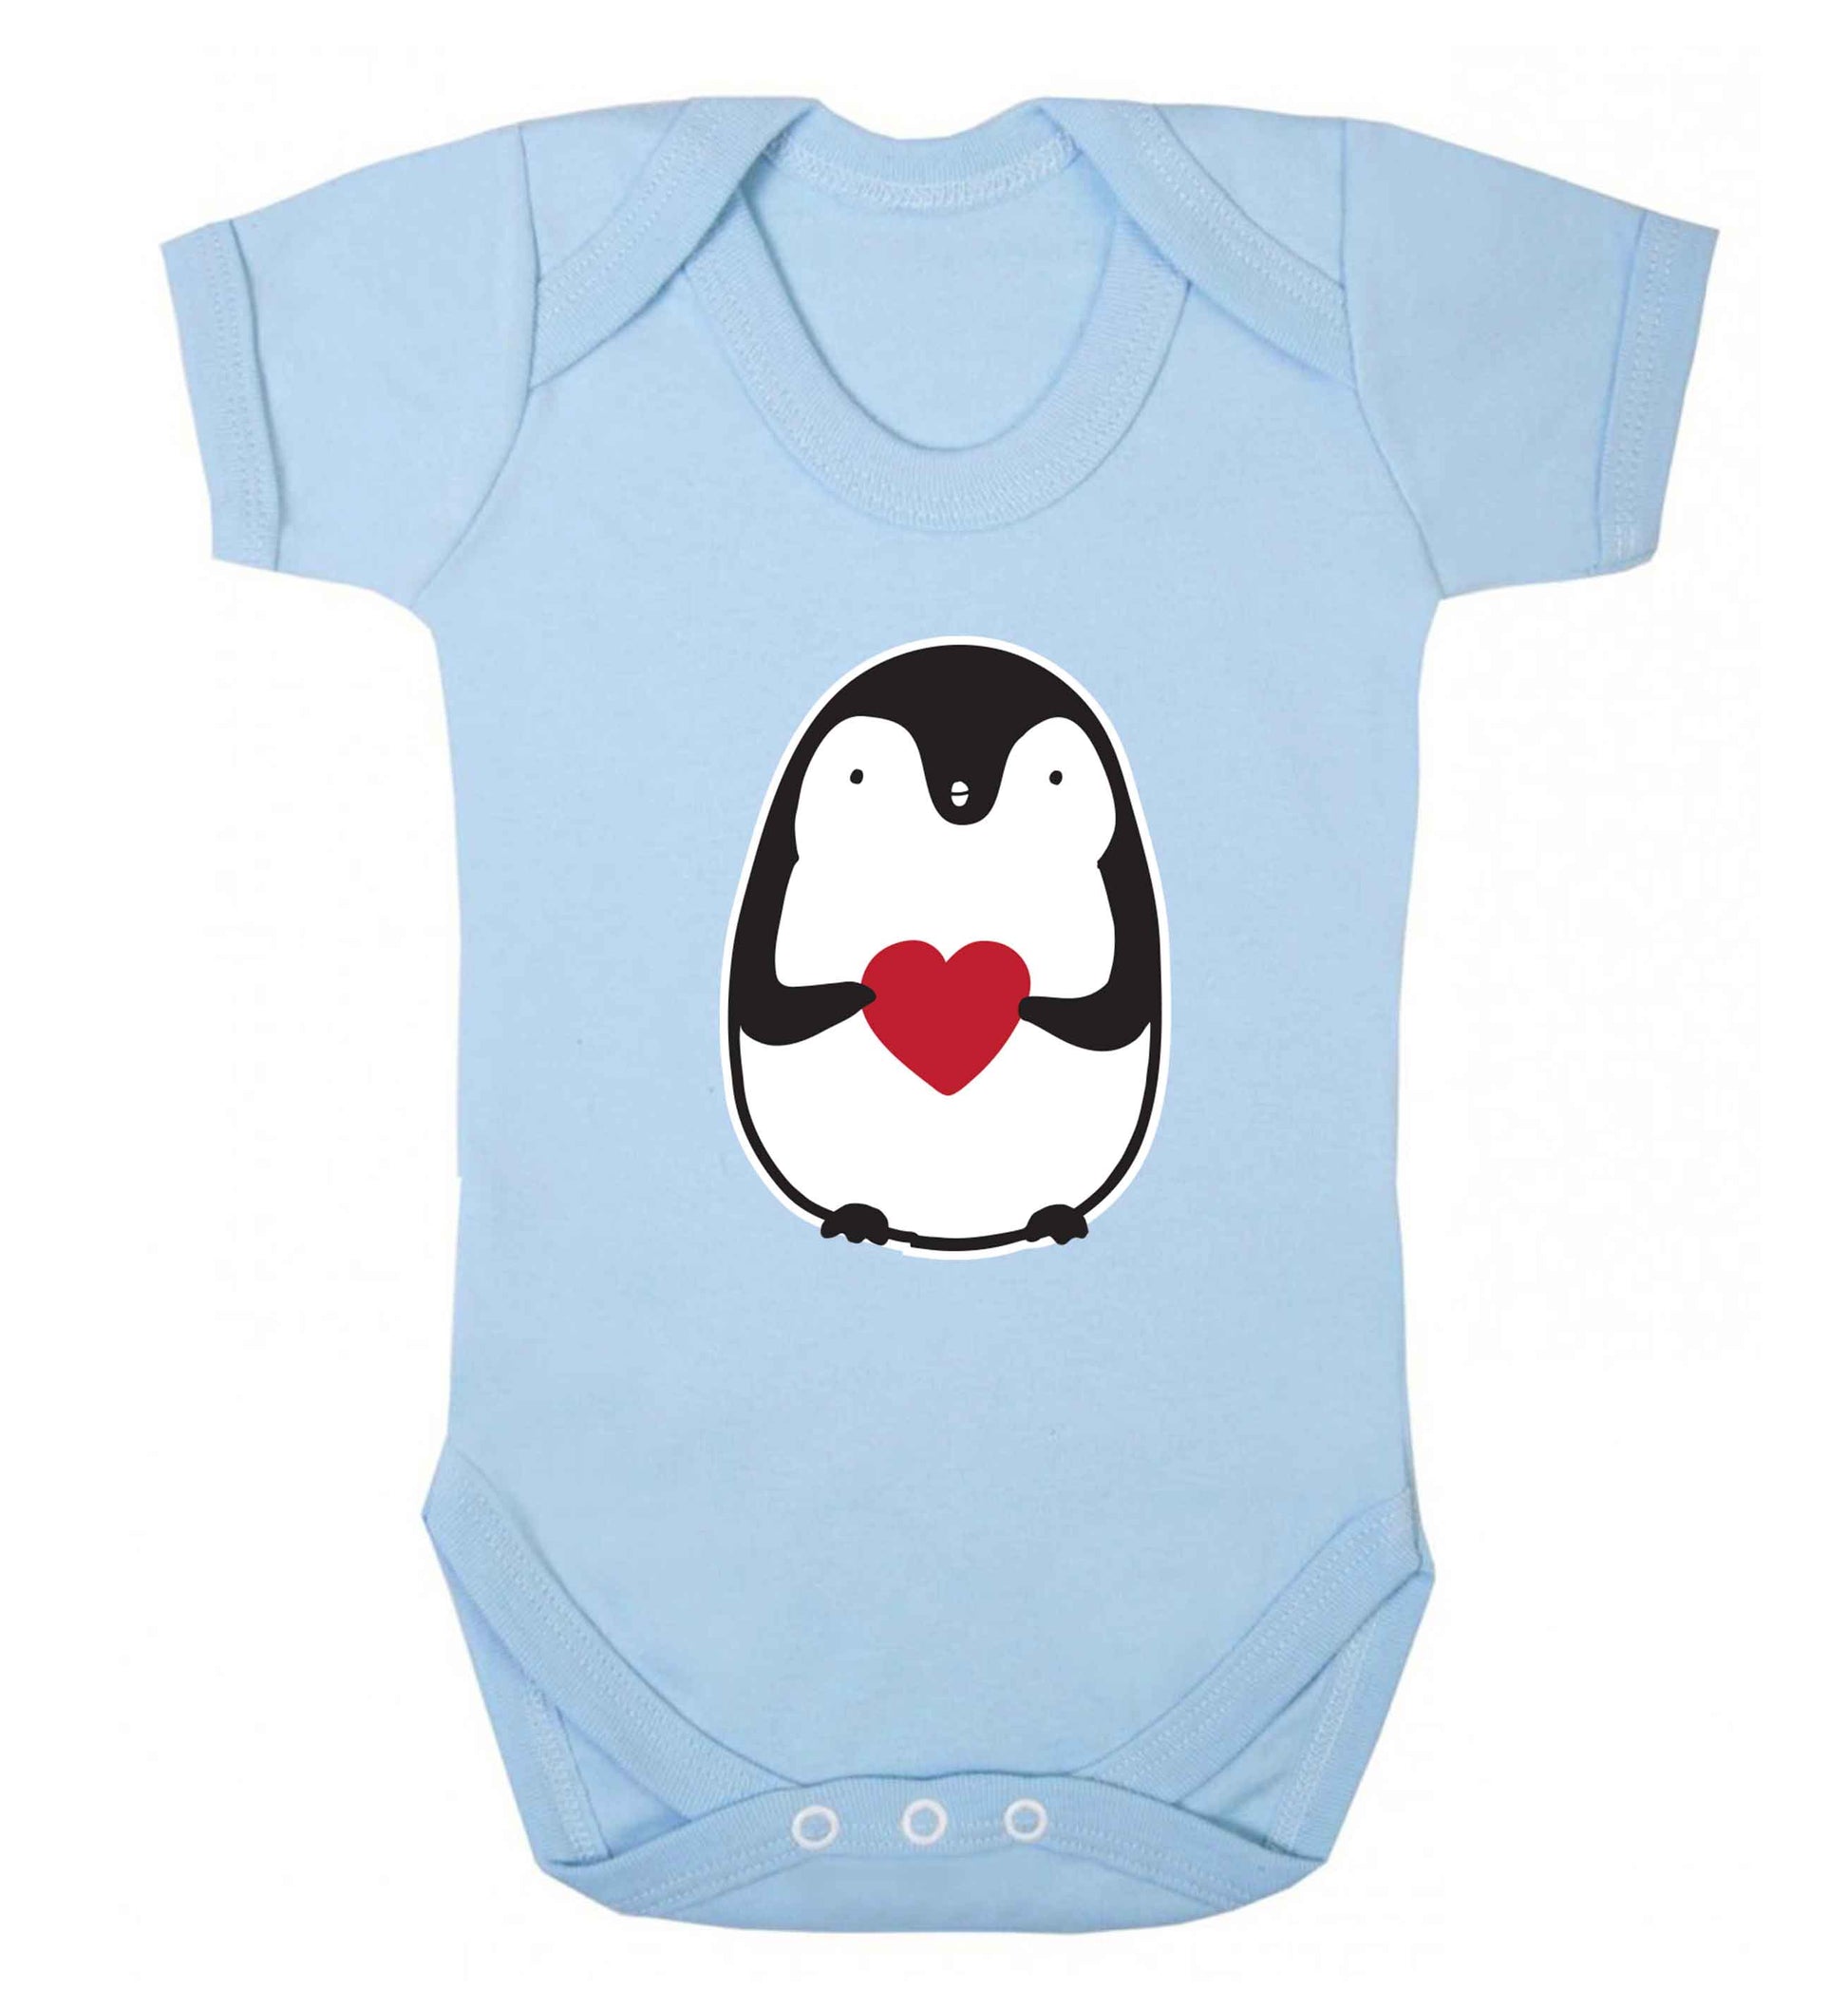 Cute penguin heart baby vest pale blue 18-24 months